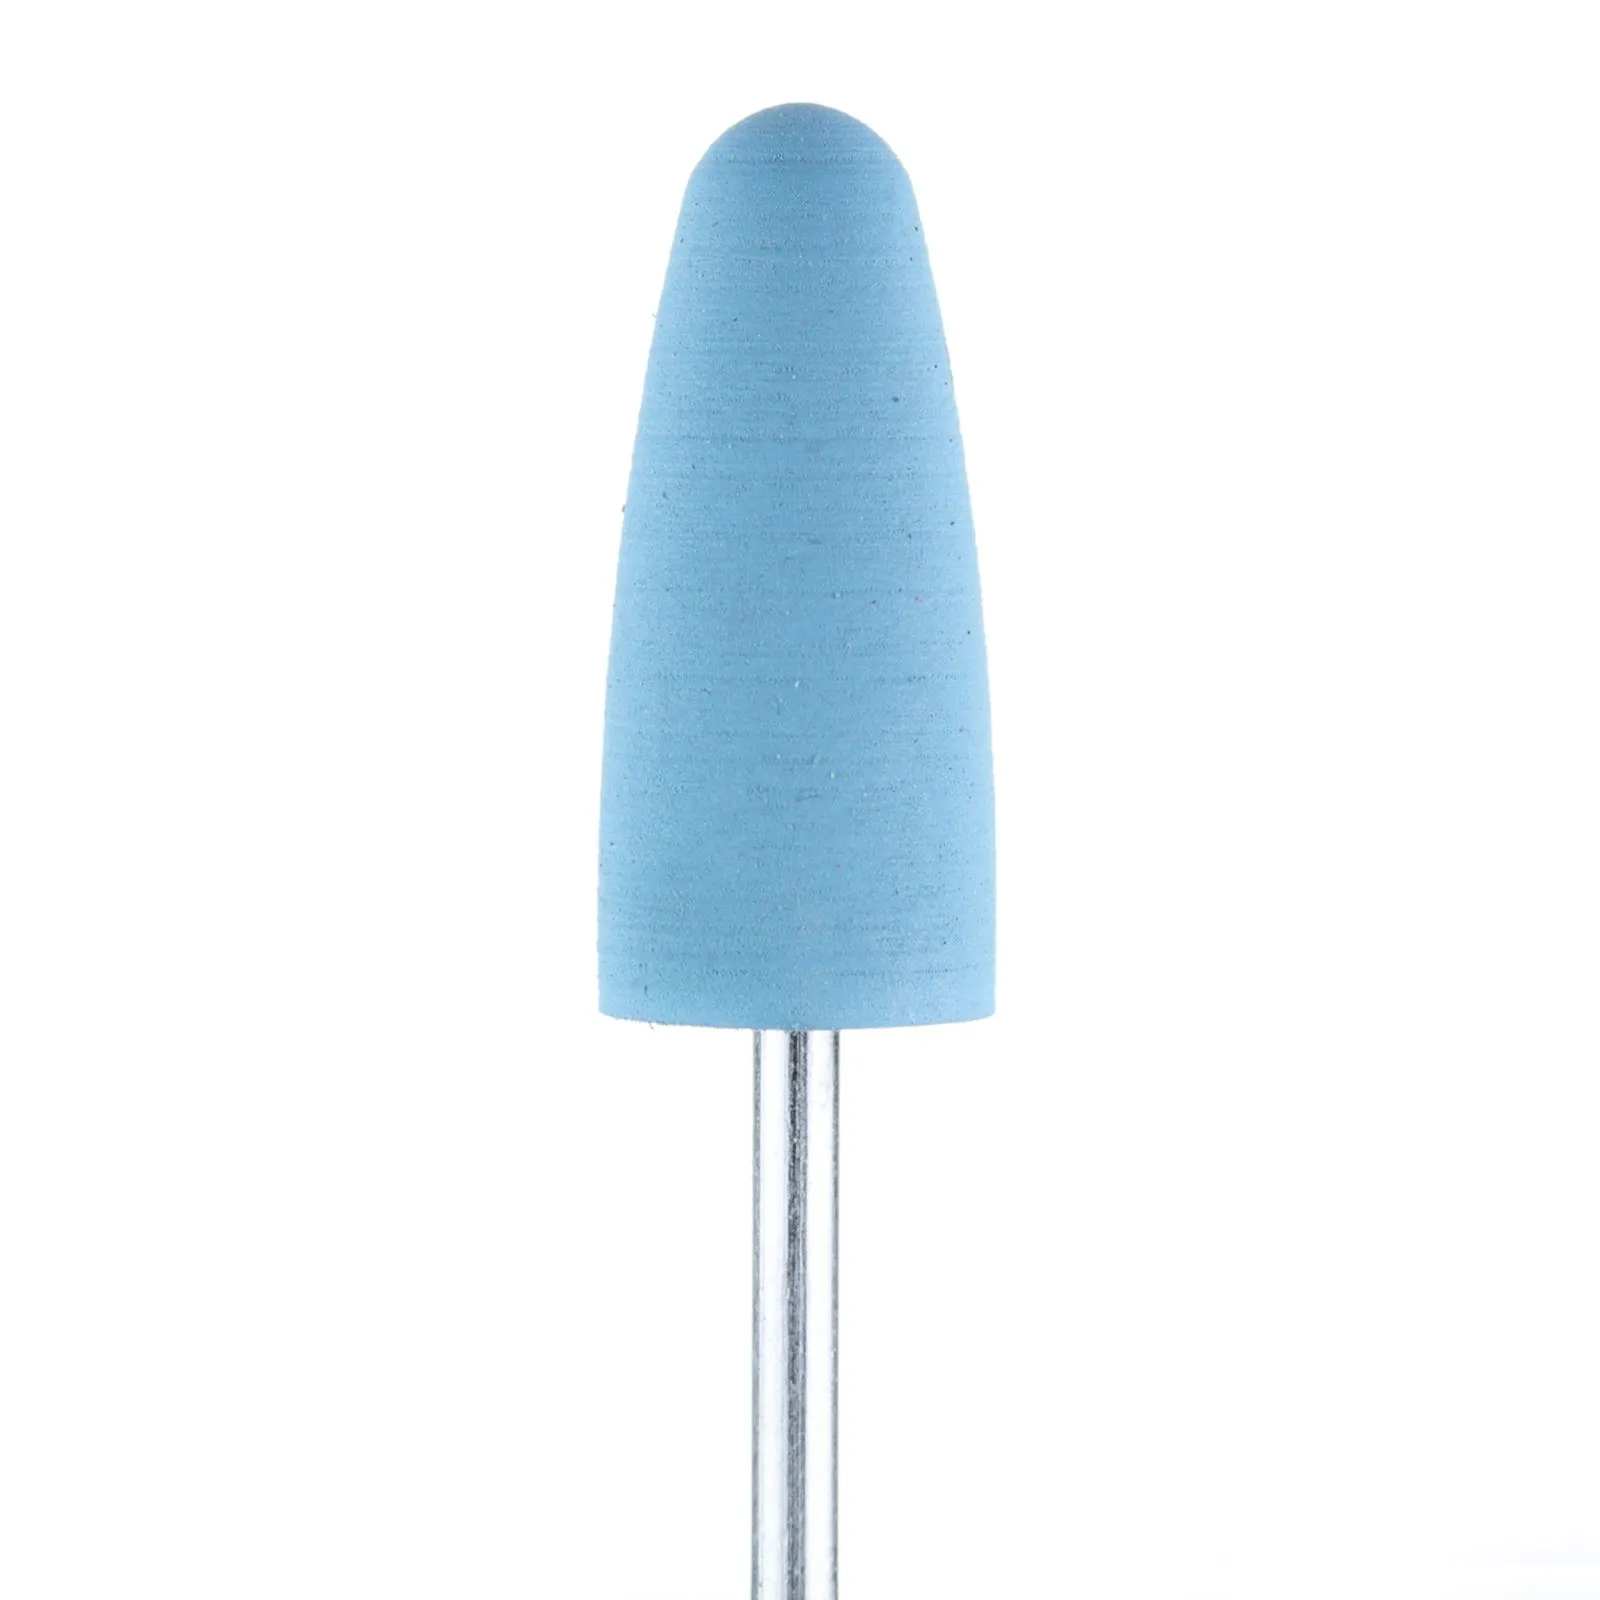 Полировщик большой закругленный конус силиконовый голубой (диаметр 10 мм)